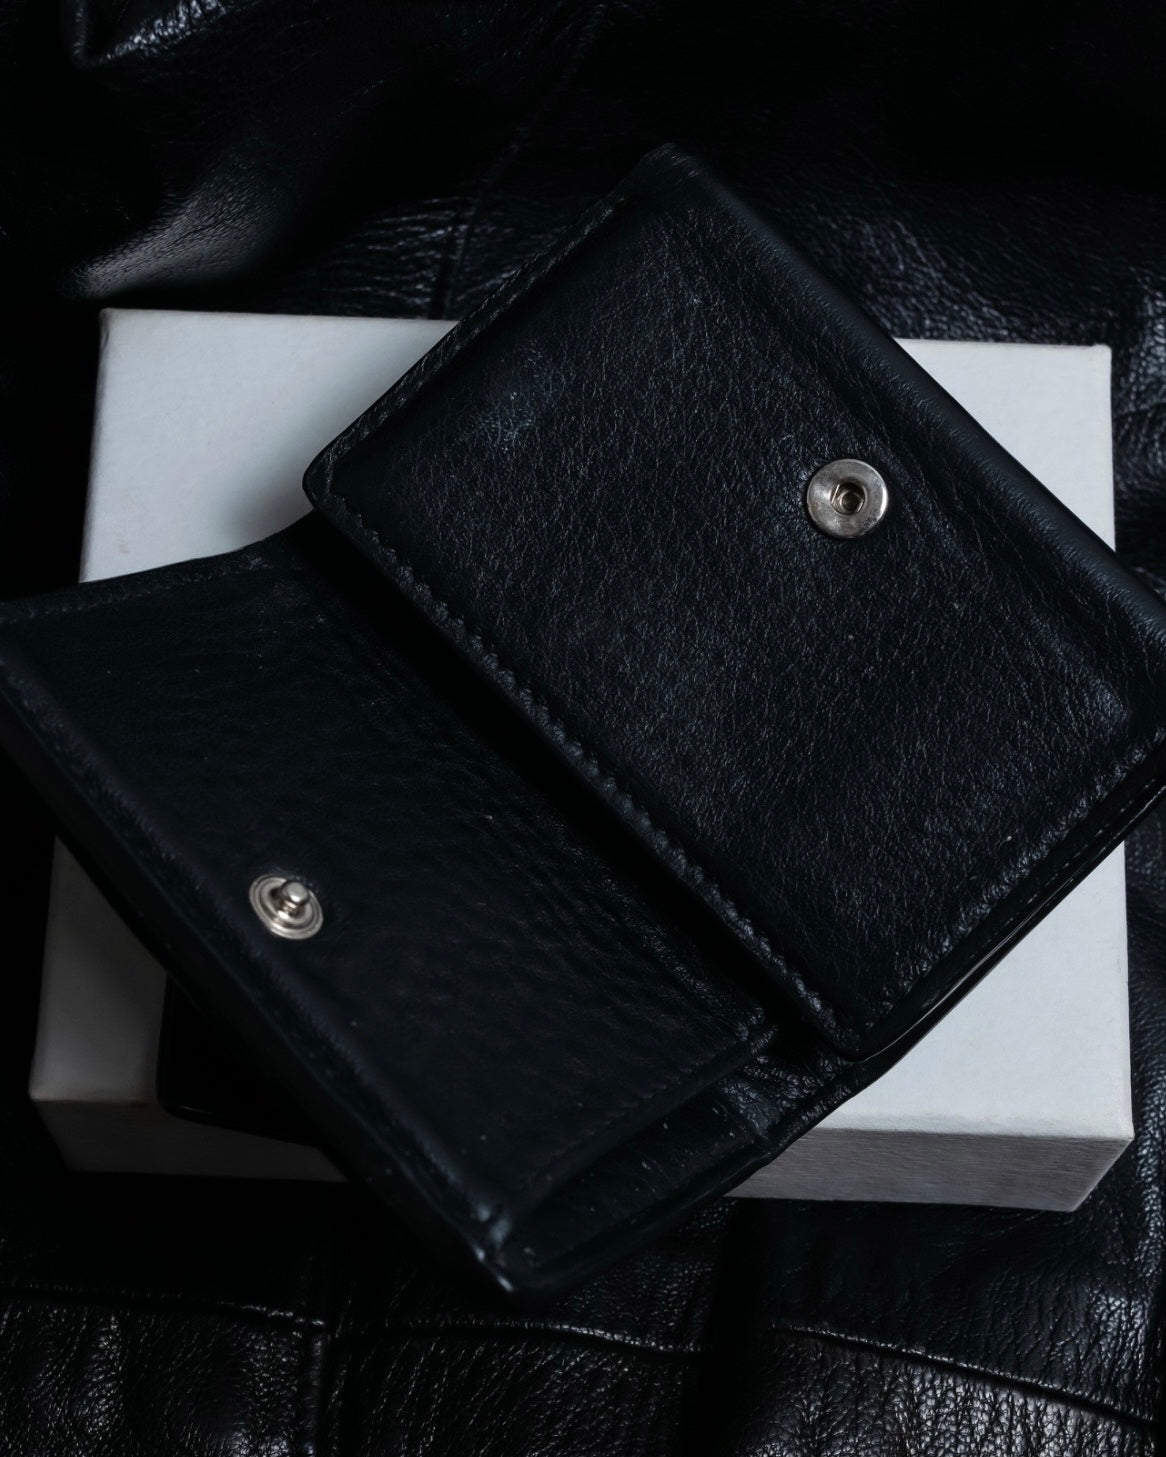 "BALENCIAGA" Leather Wallet